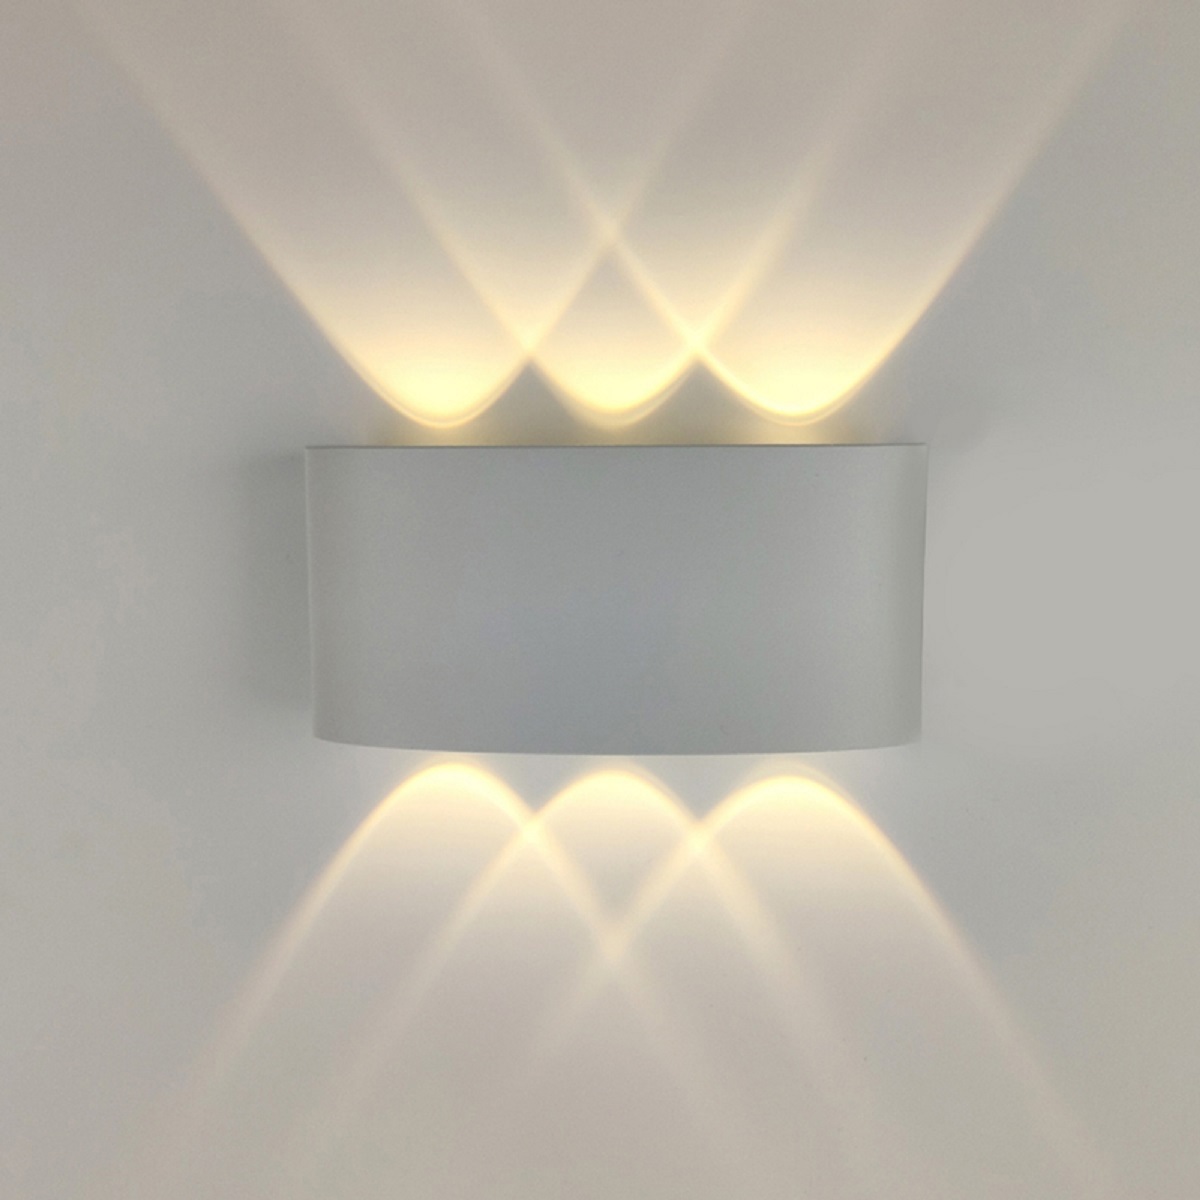 Настенный светильник светодиодный Estares БРА теплый белый свет цвет .